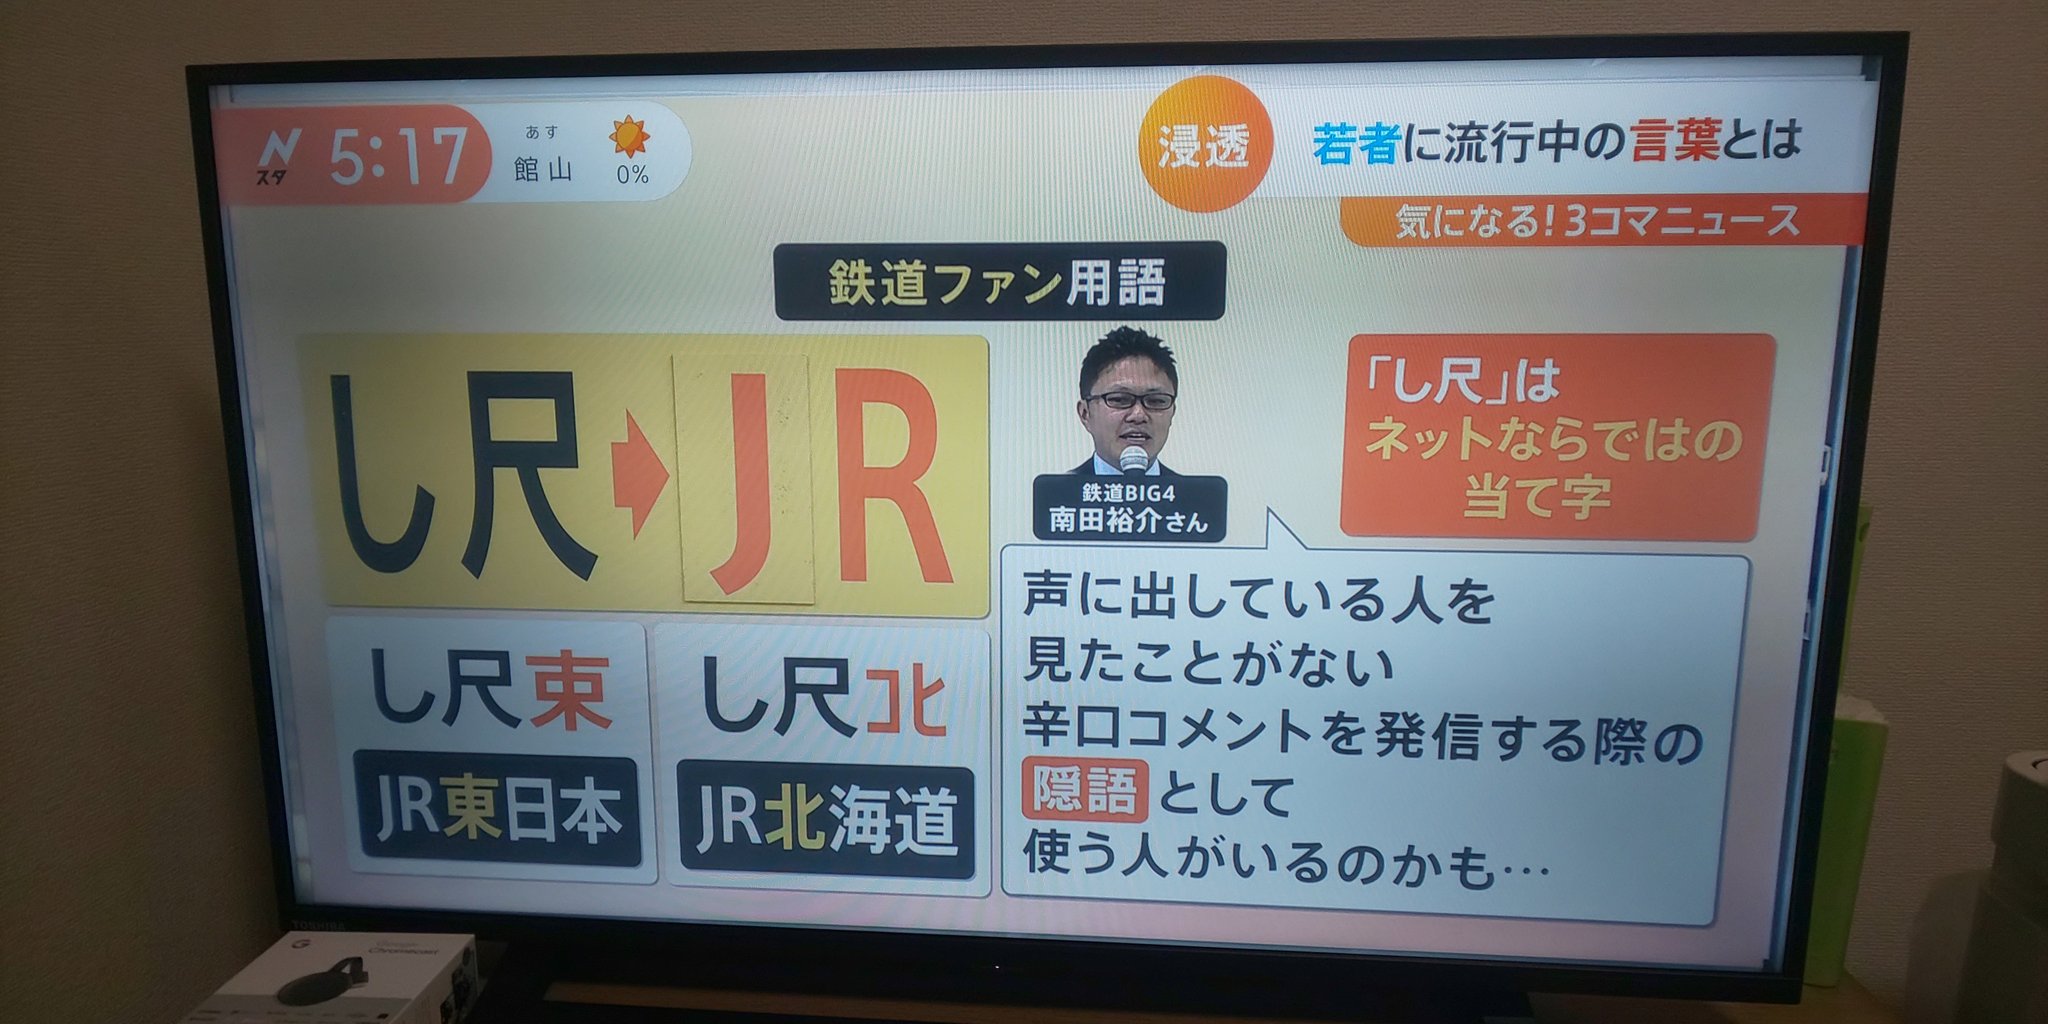 【賛否両論】｢JR東日本｣の隠語は｢し尺束｣? ｢鉄道ファン用語｣としてテレビで紹介され話題に